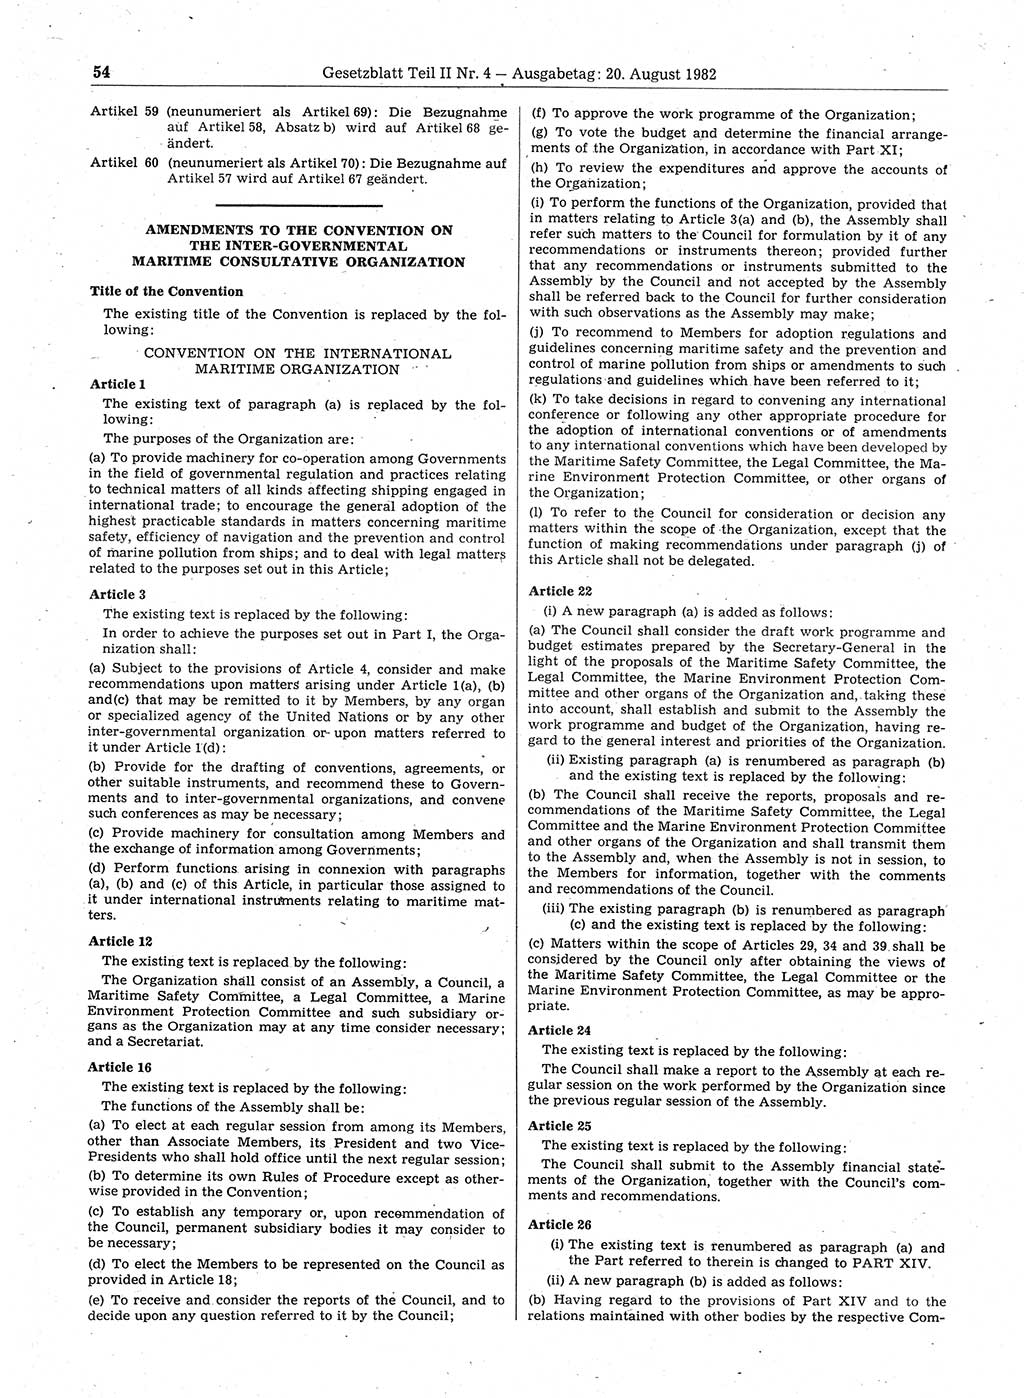 Gesetzblatt (GBl.) der Deutschen Demokratischen Republik (DDR) Teil ⅠⅠ 1982, Seite 54 (GBl. DDR ⅠⅠ 1982, S. 54)